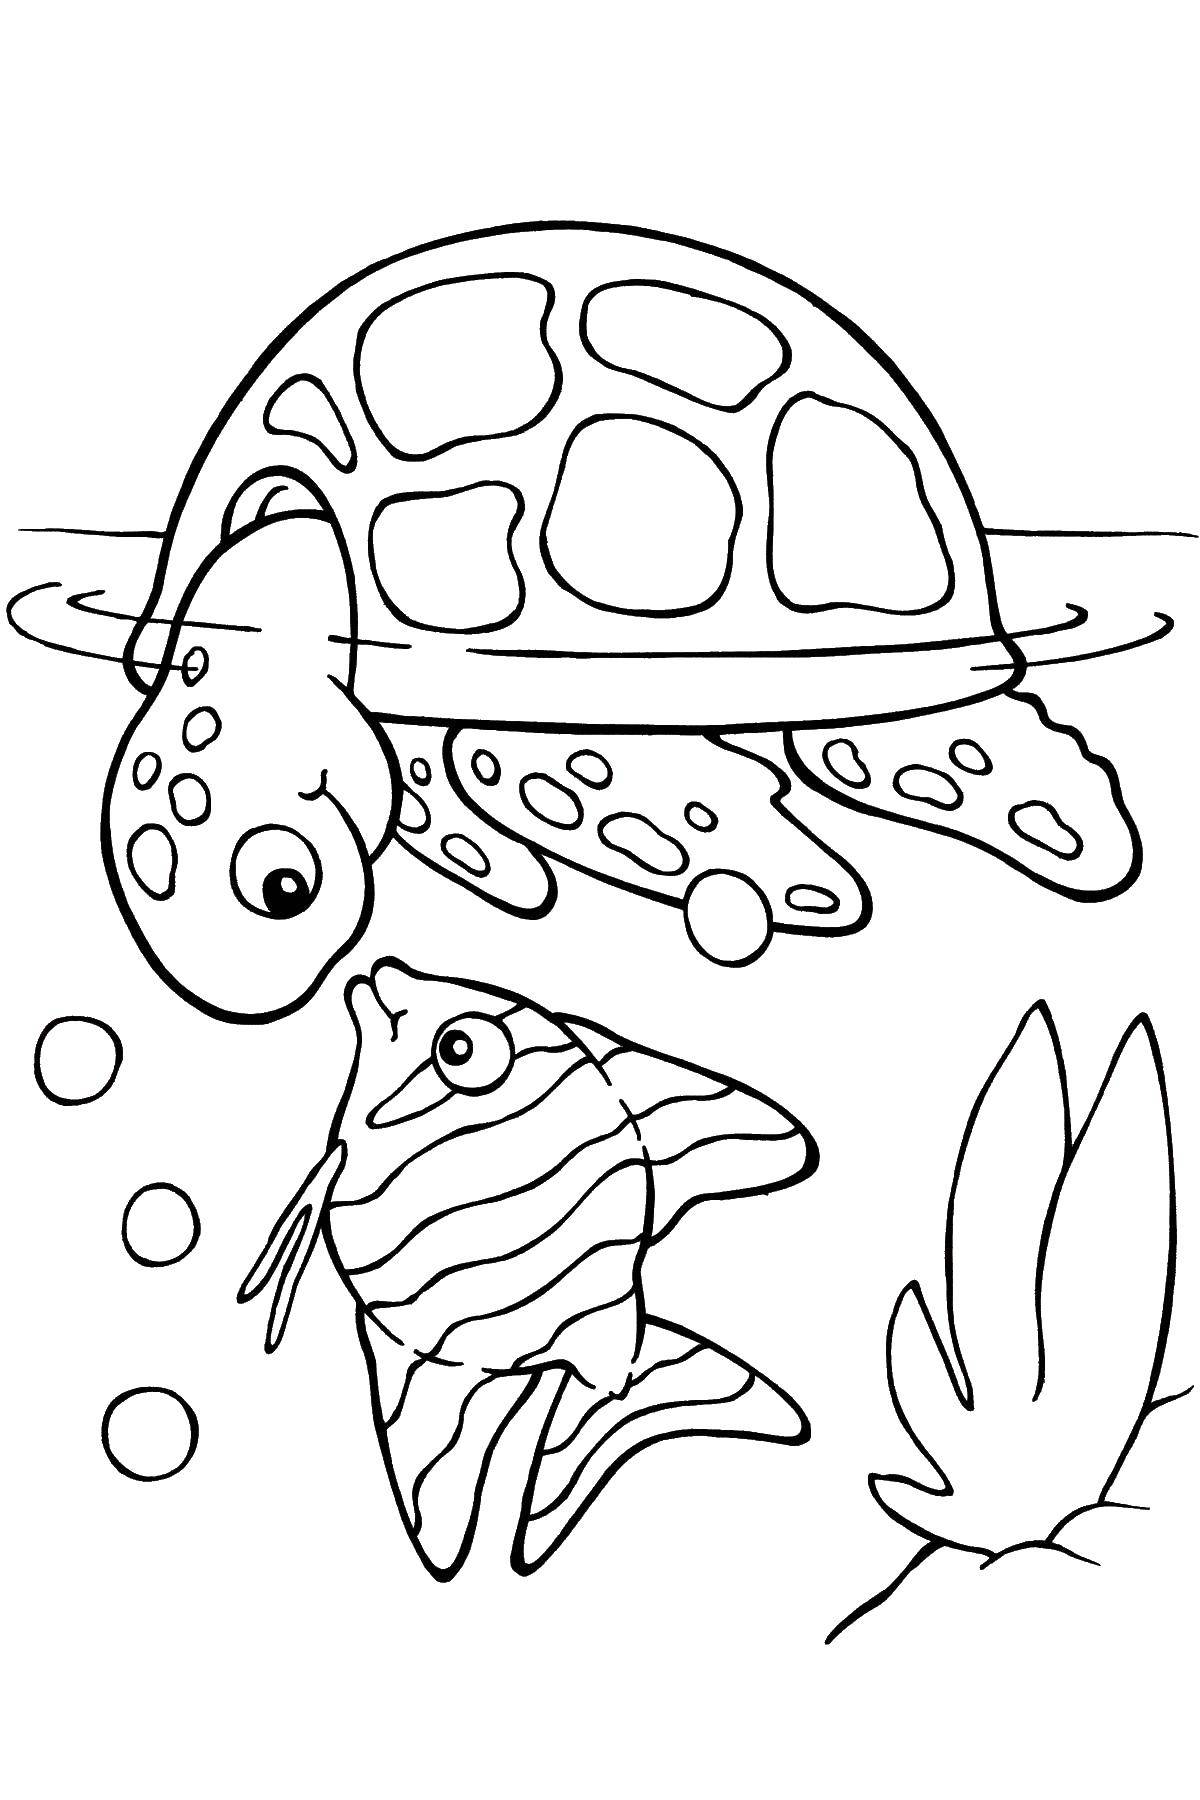 Название: Раскраска Черепашке интересна рыбка. Категория: Черепаха. Теги: Рептилия, черепаха.